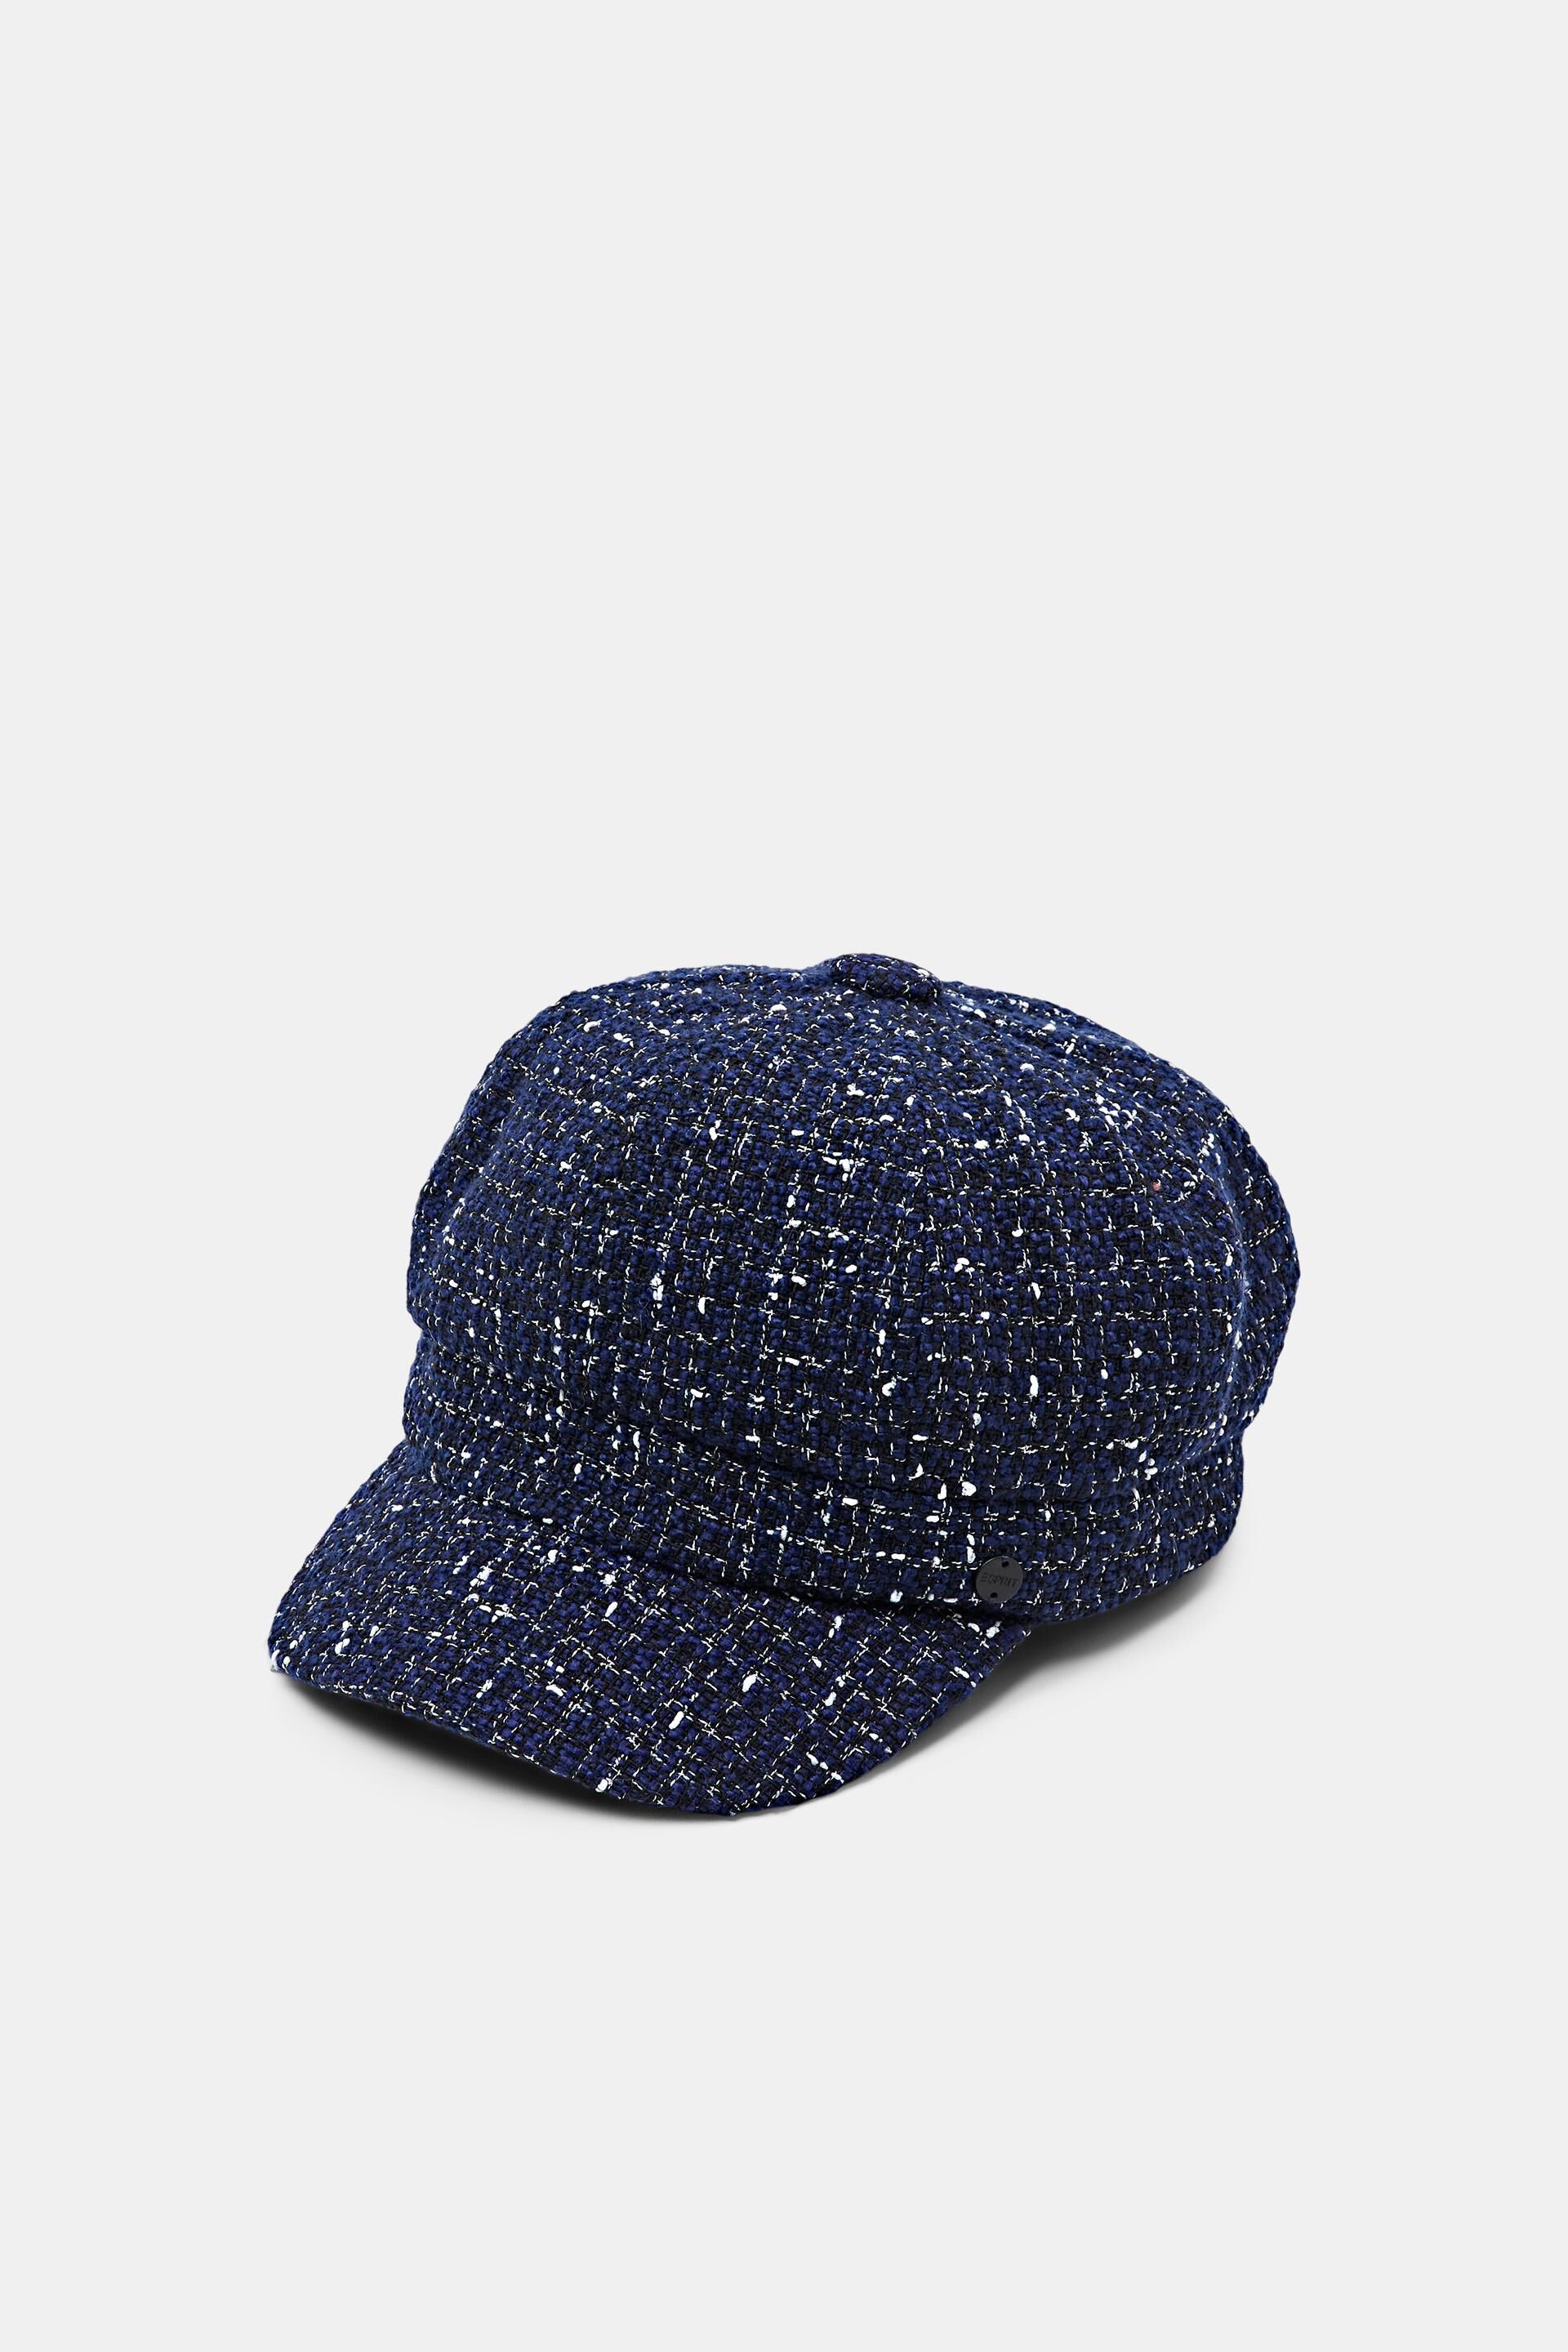 Esprit Hats/Caps